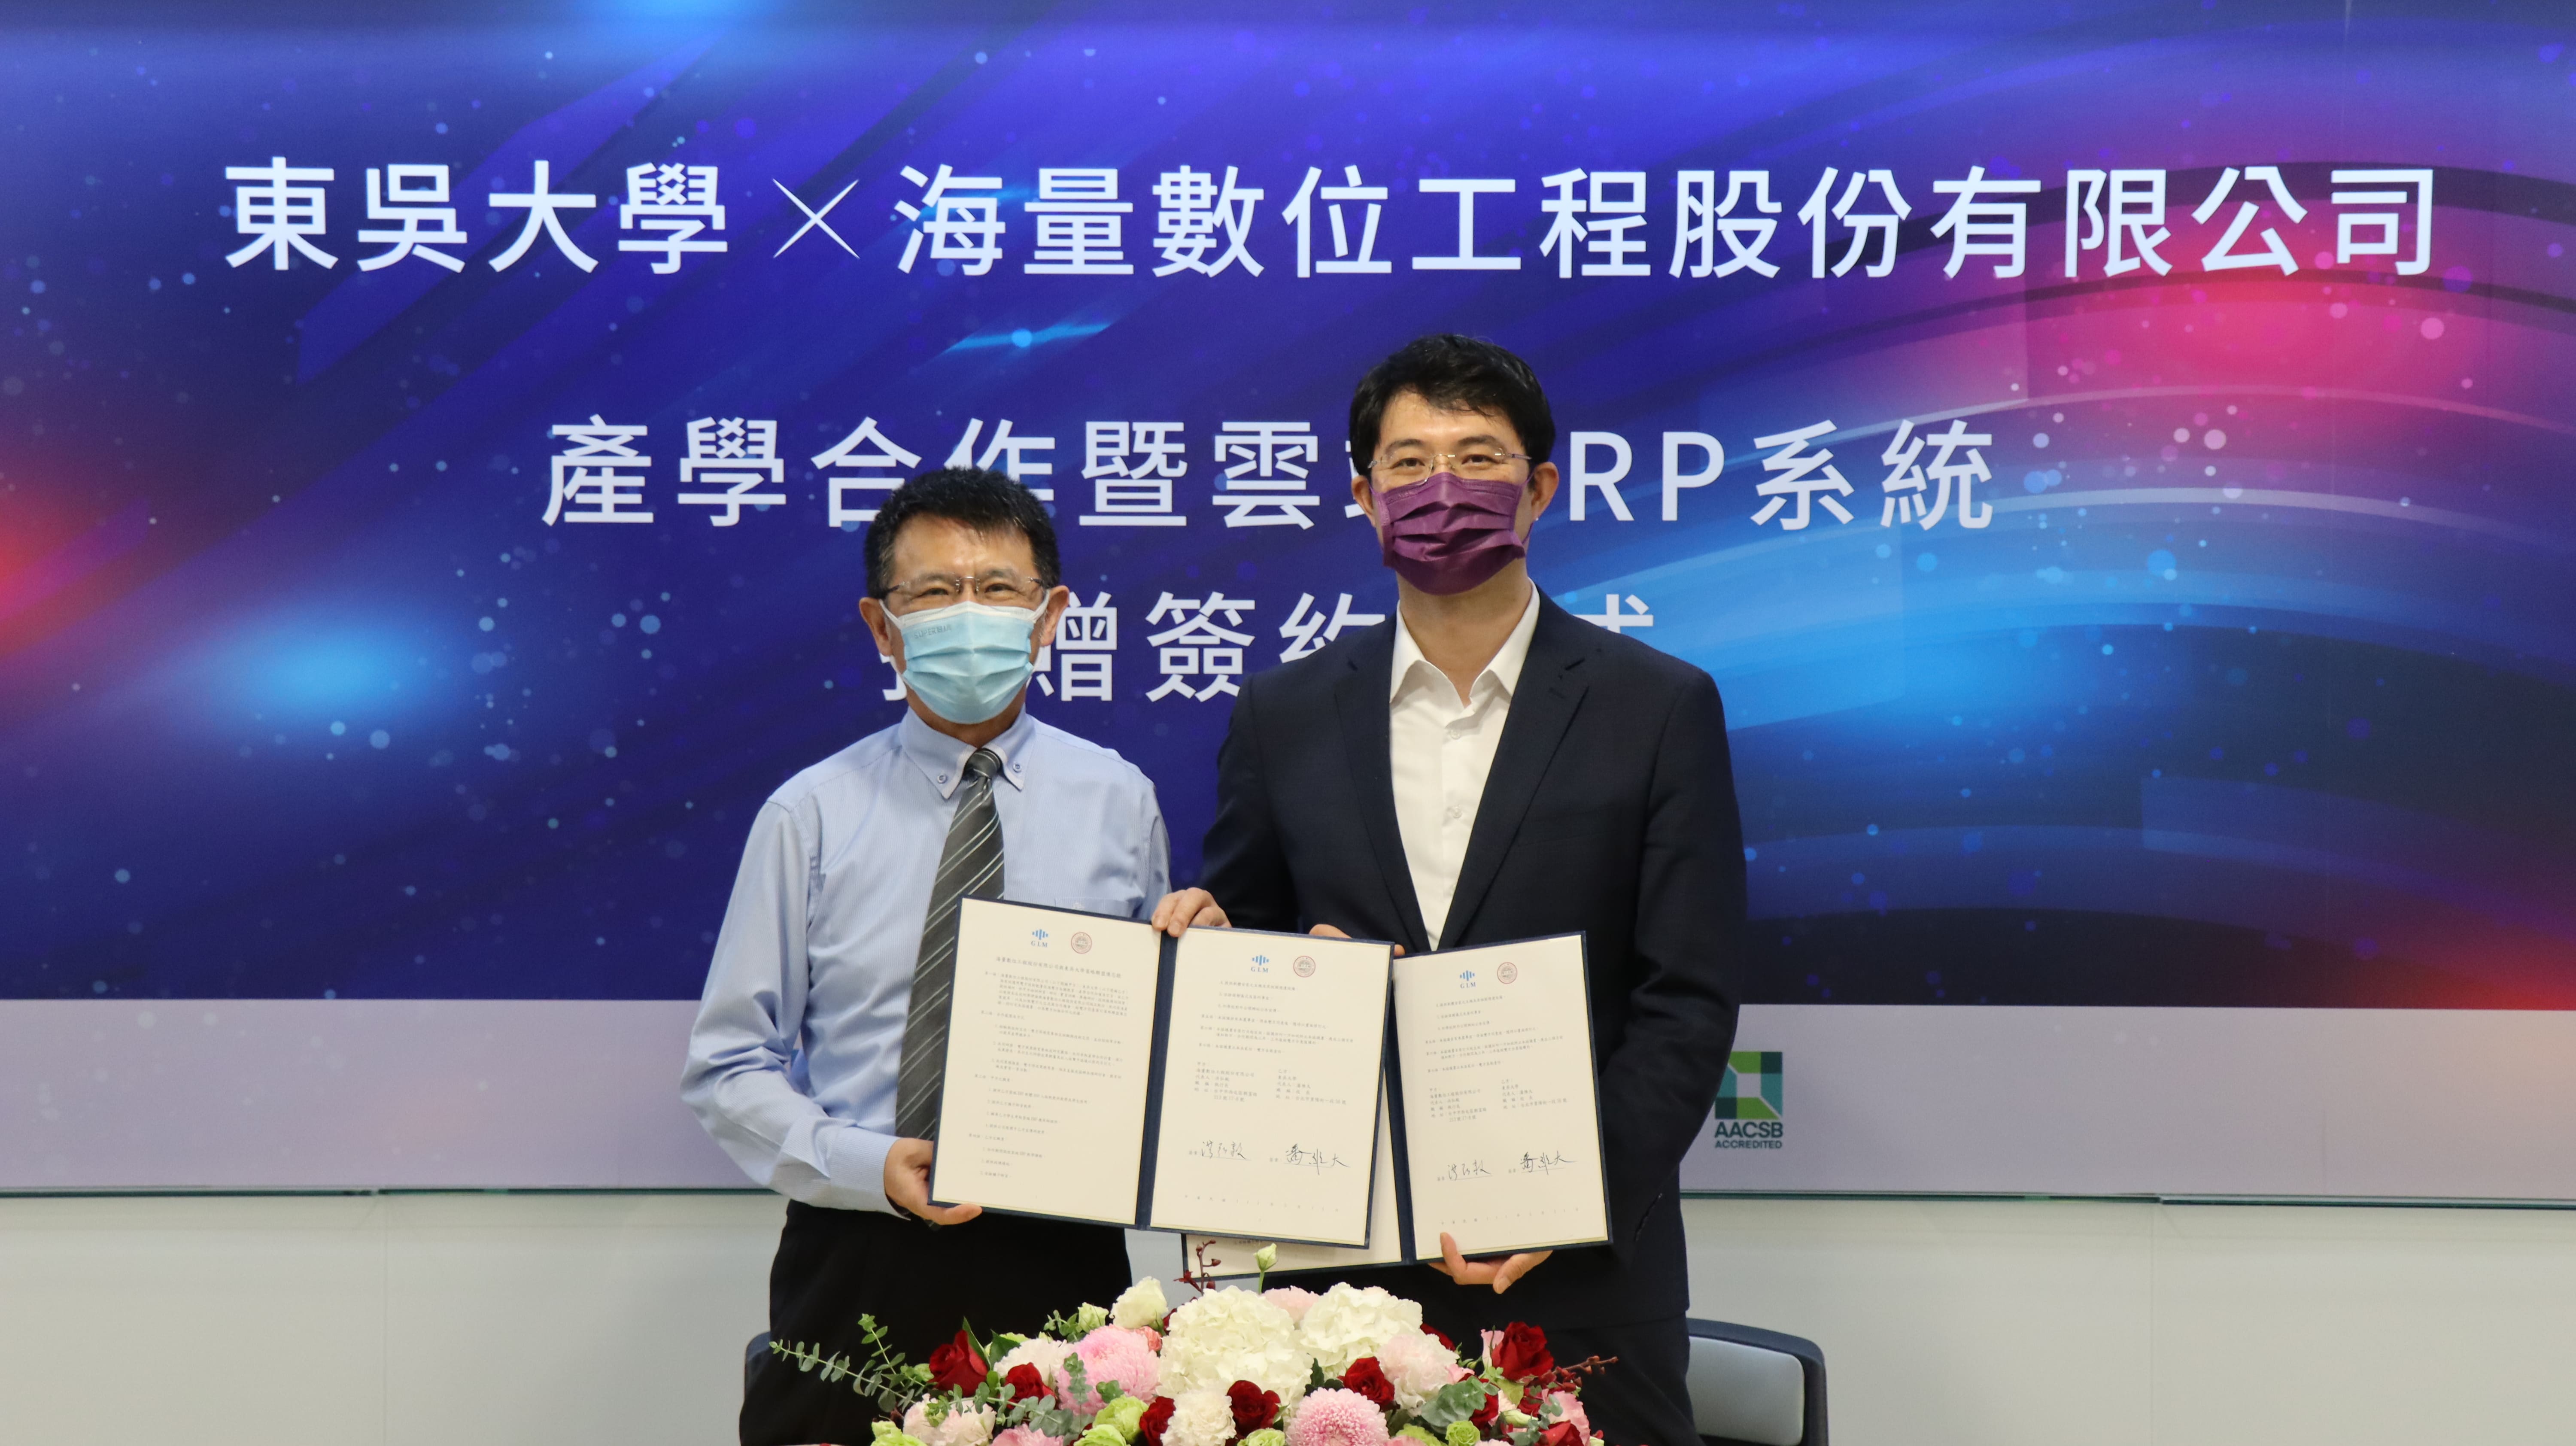 東吳大學潘維大校長(左)及海量數位工程洪弘毅執行長(右)進行雲端ERP軟體捐贈簽約儀式。